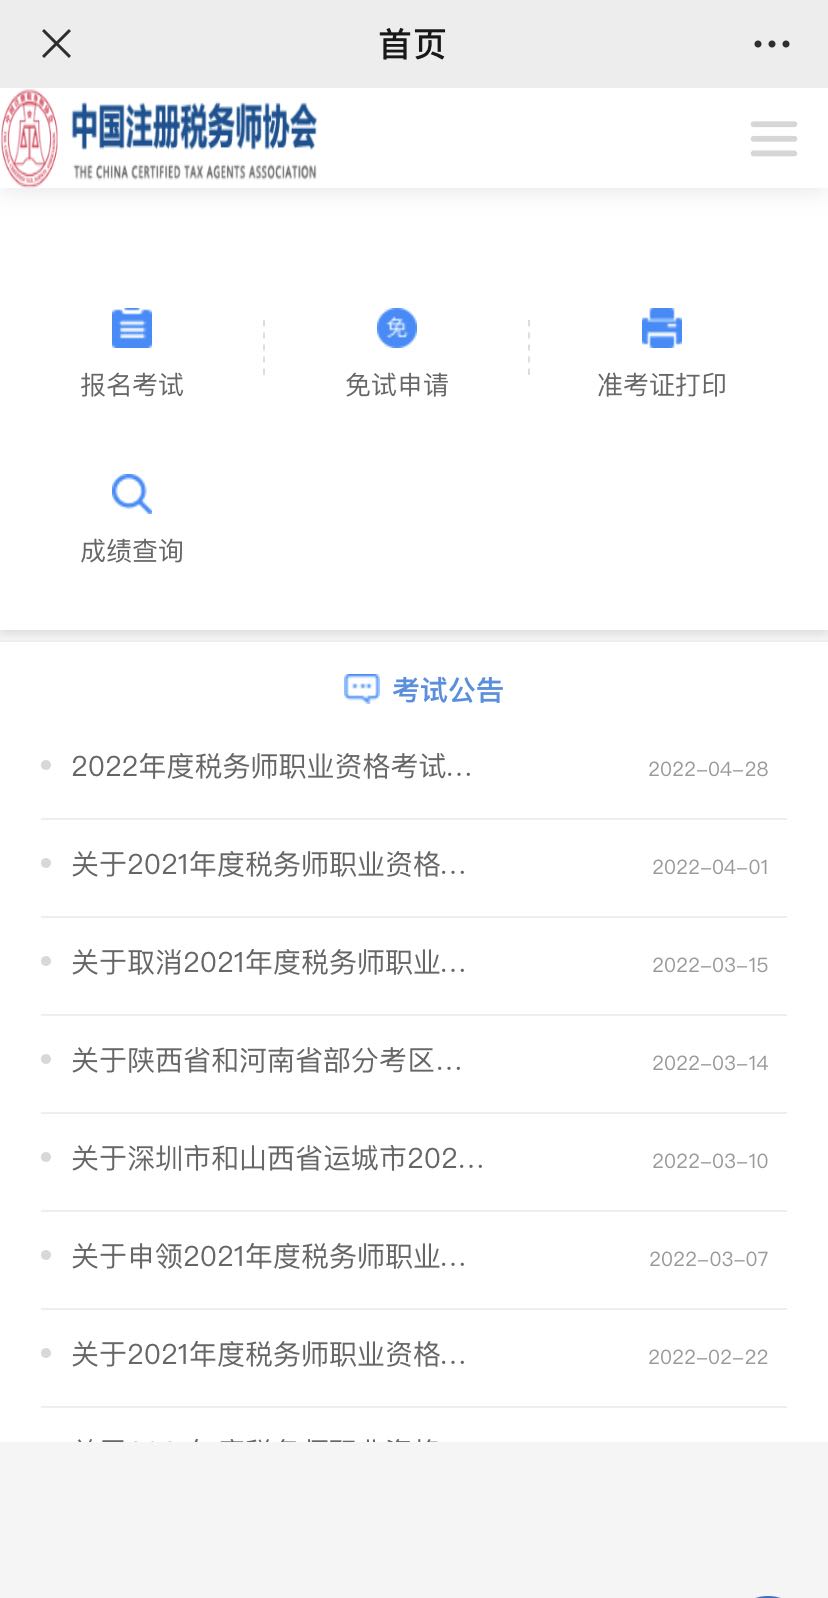 中国注册税务师协会官方微信号报名登录页面